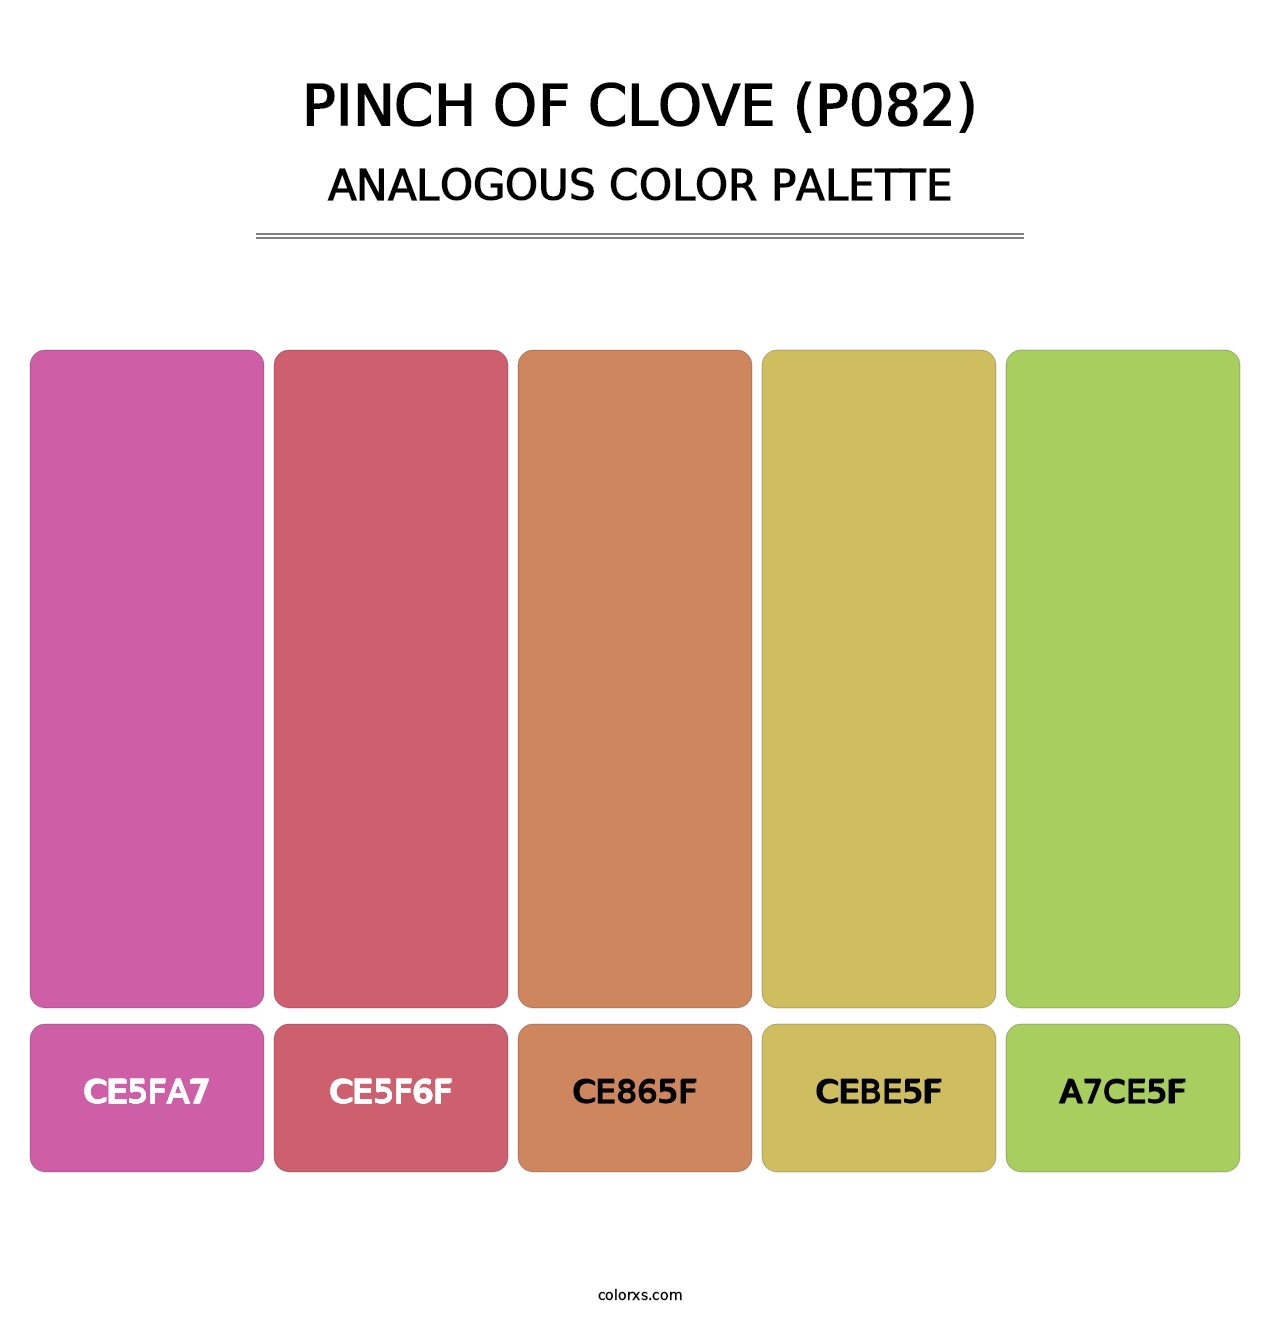 Pinch of Clove (P082) - Analogous Color Palette